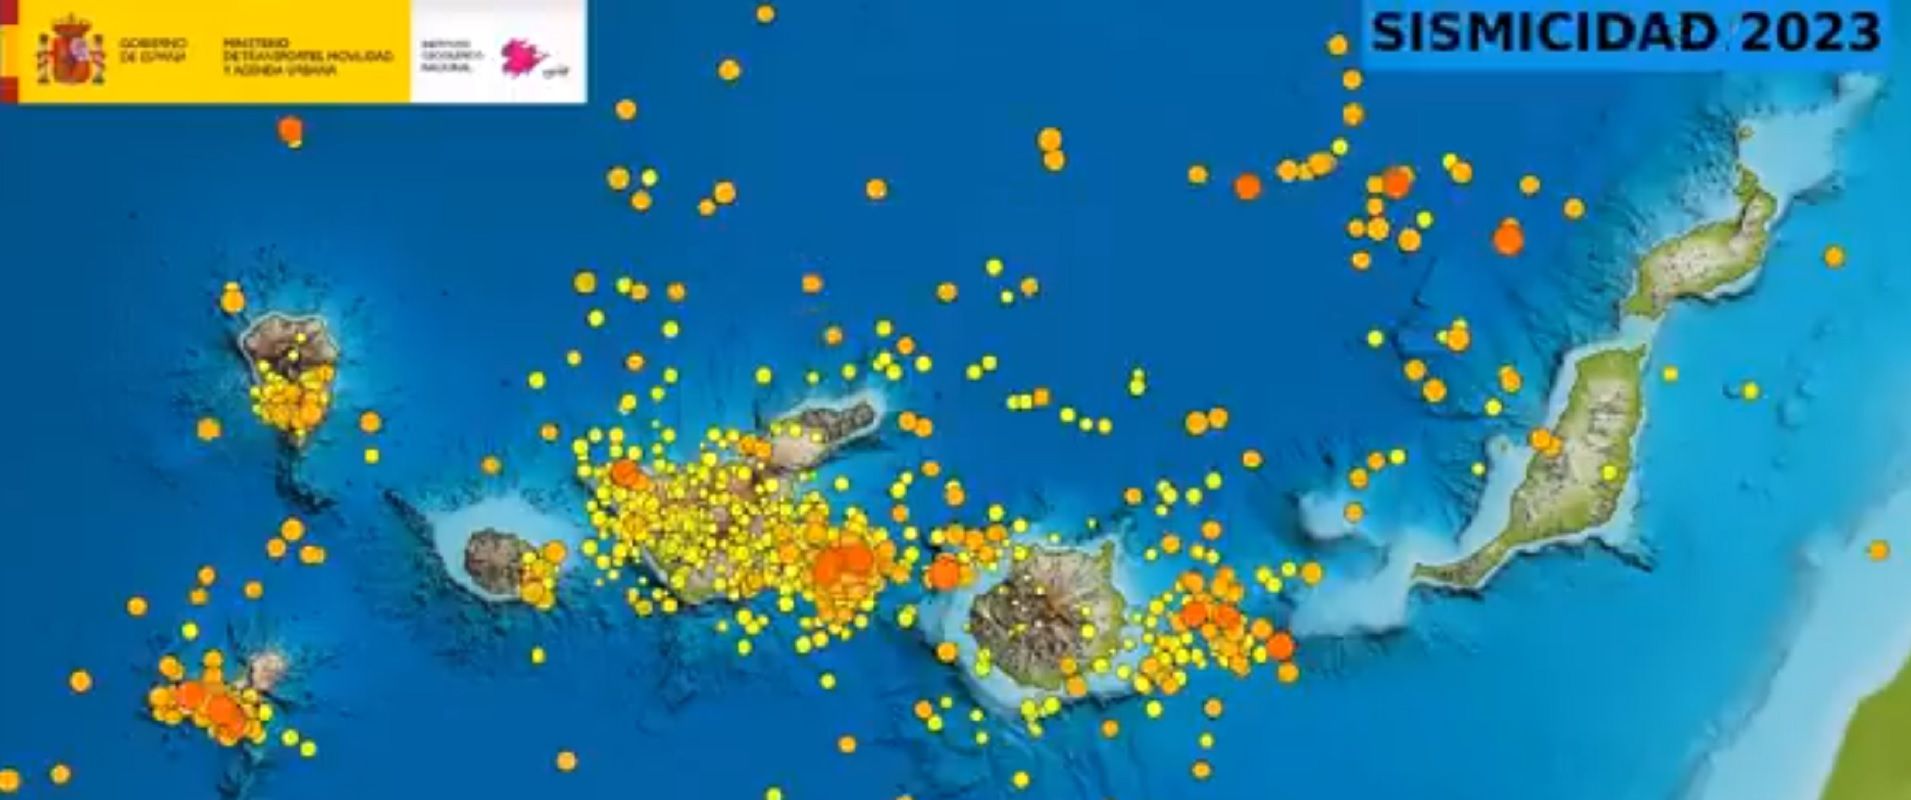 Movimientos sísmicos en Canarias durante el pasado año 2023